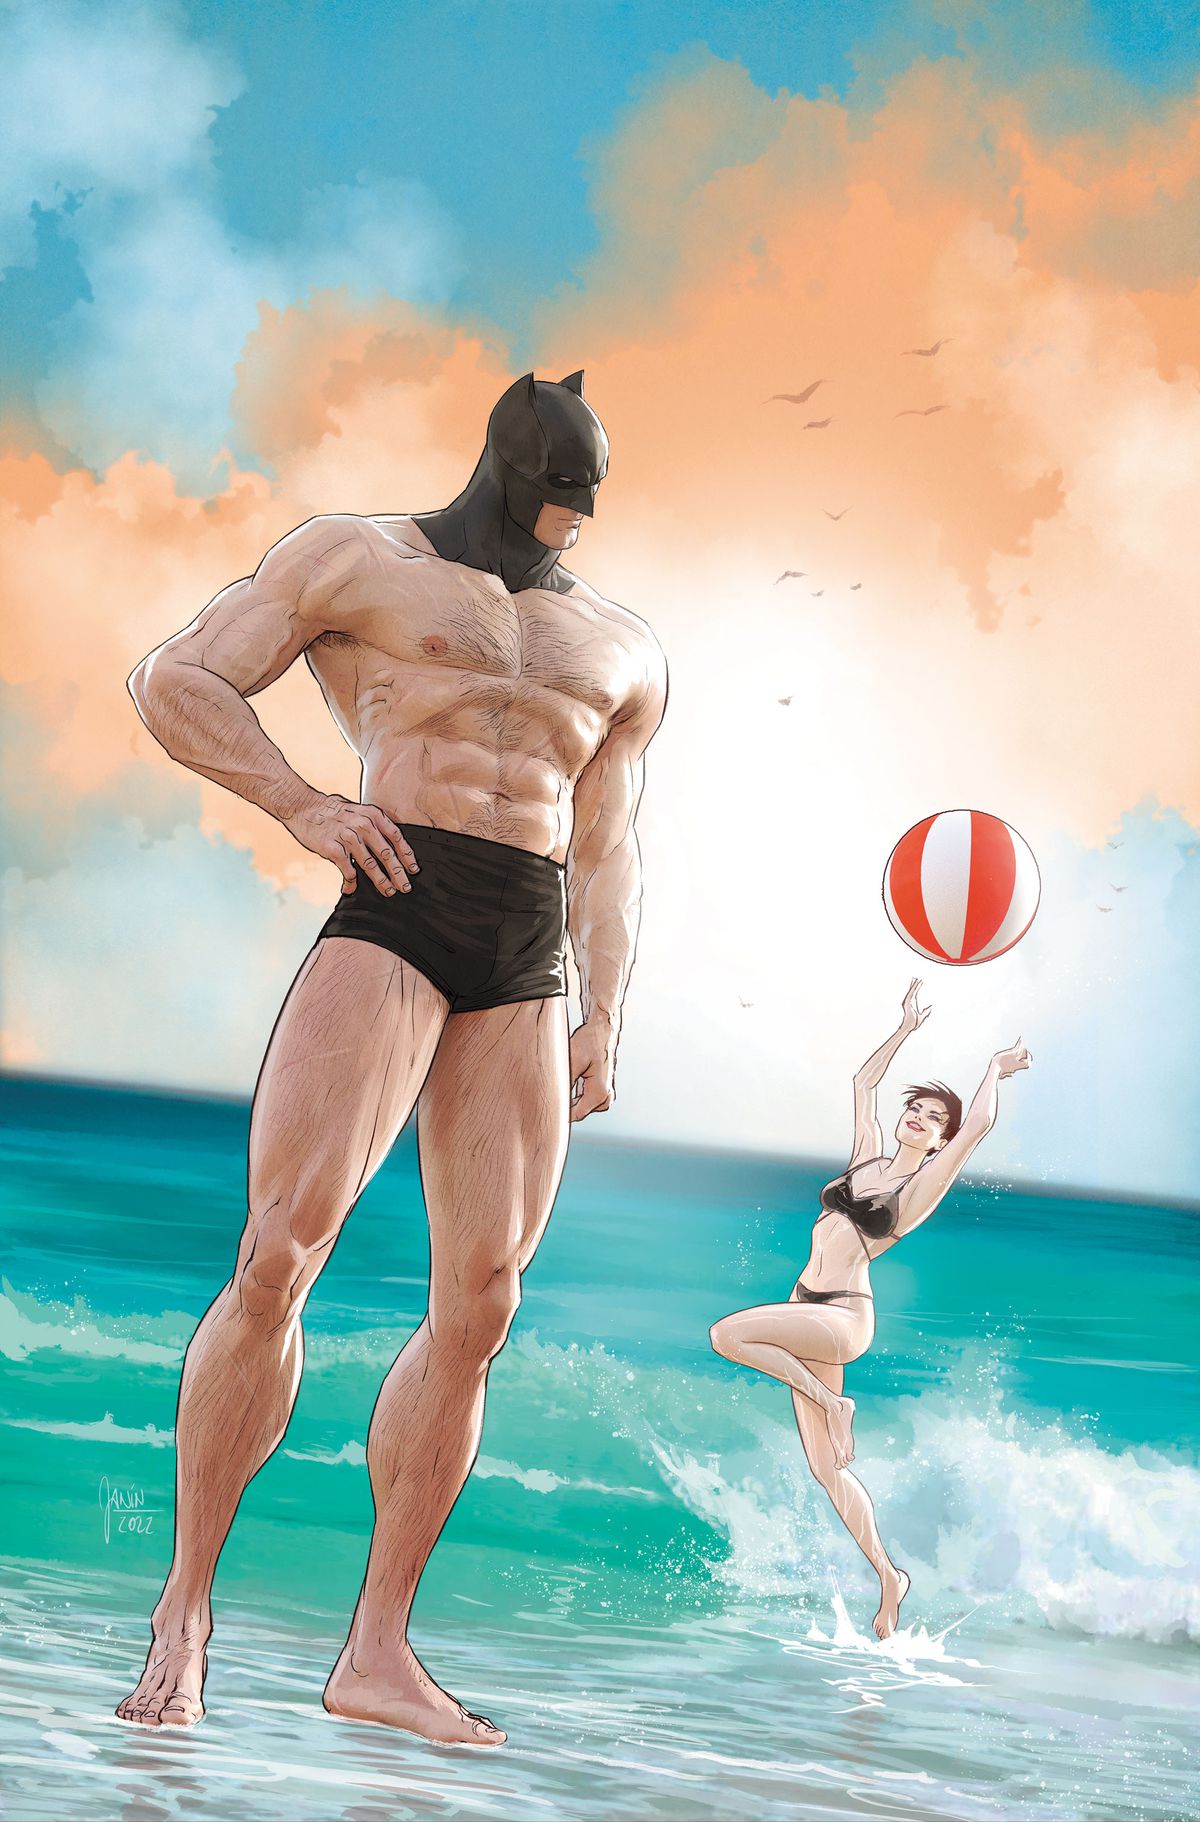 Batman står på stranden iförd en liten uppsättning badbyxor och sin Batman-kåpa.  Bakom honom leker Catwoman med en badboll. 